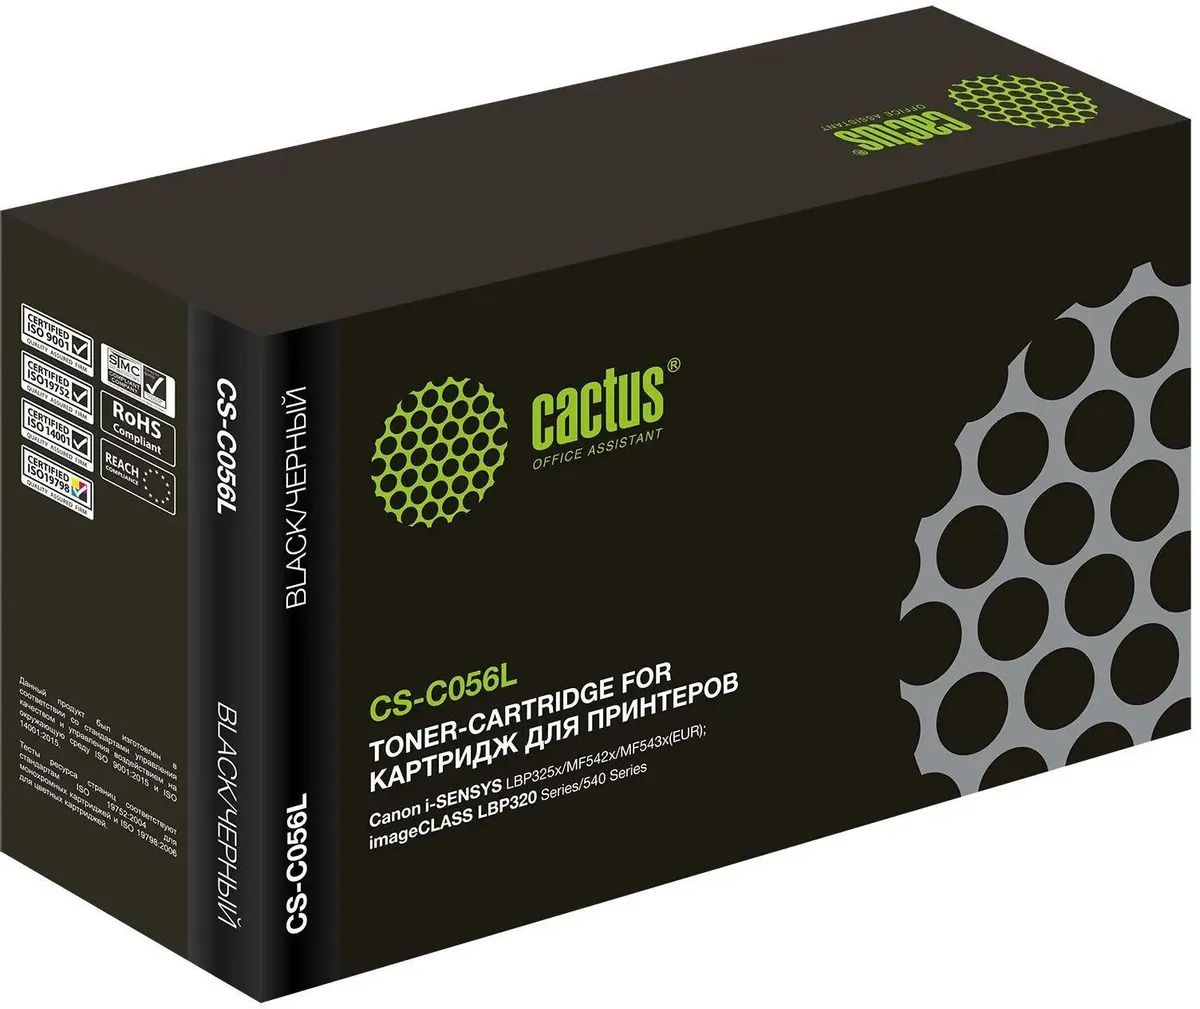 Картридж лазерный Cactus CS-C056L 056 L черный (5100стр.) для Canon imageCLASS LBP320 Series/540 Series картридж cactus cs c056l совместимый canon 056hbk 3008c002 черный 10000 стр